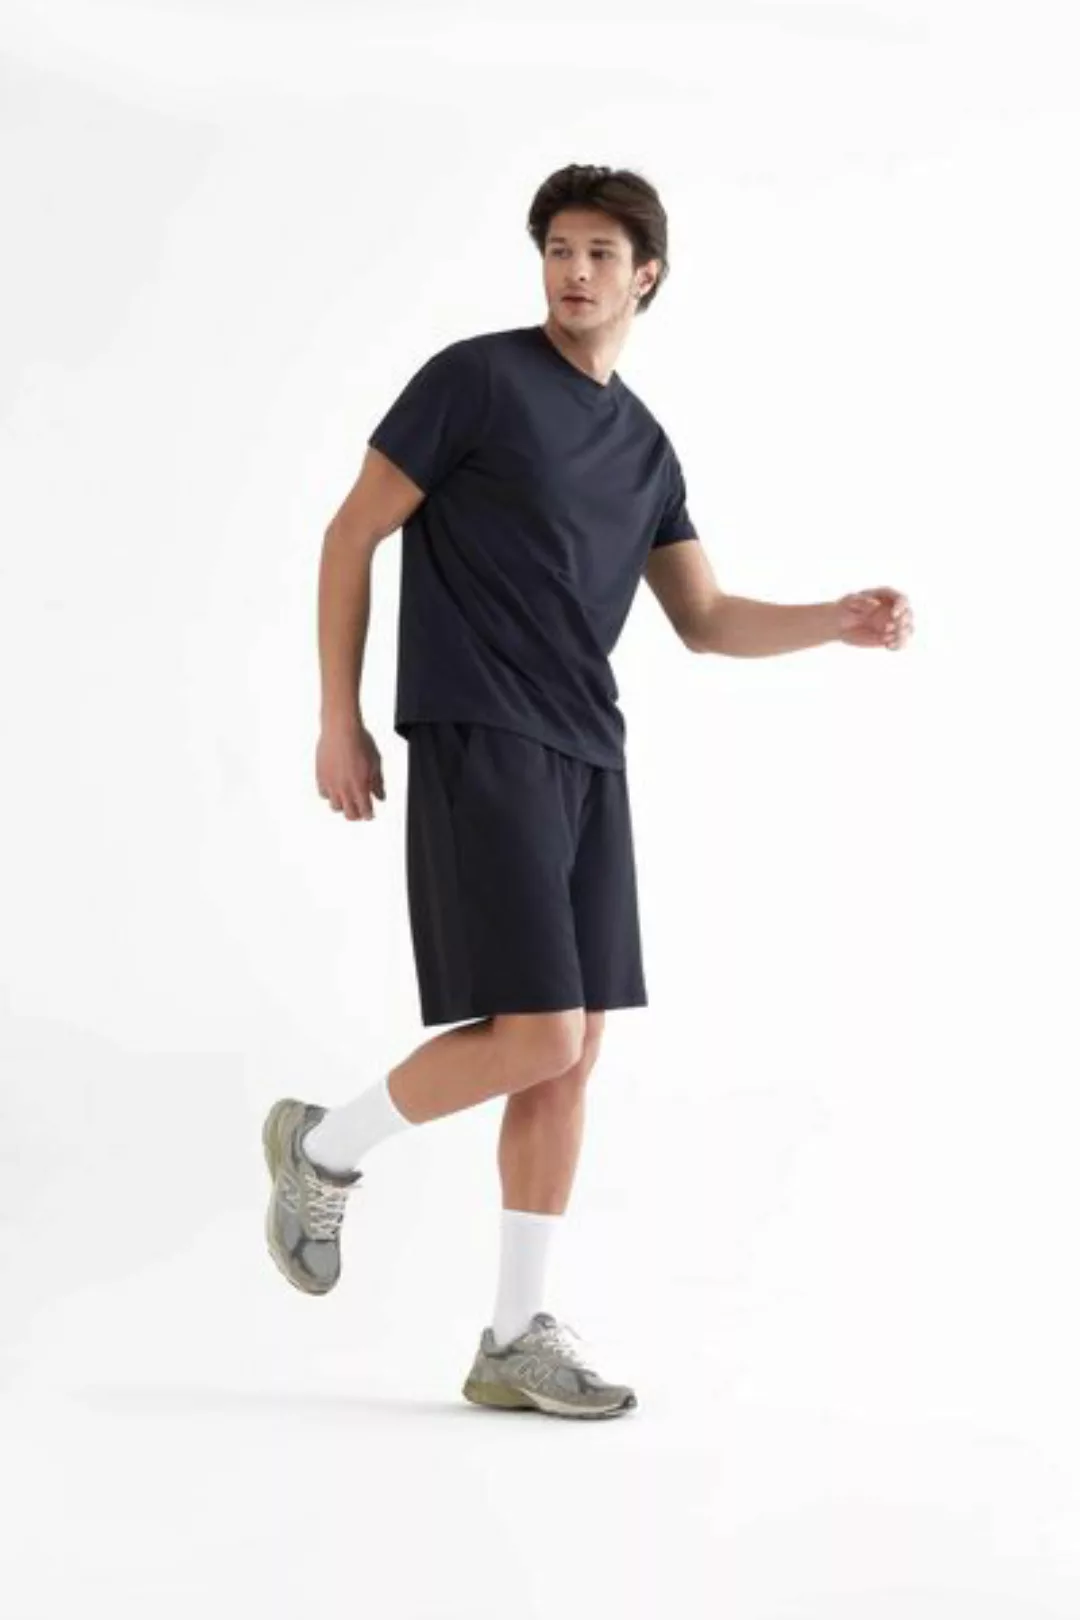 Herren Relaxed Shorts Aus Bio-baumwolle Und Modal T2300 günstig online kaufen